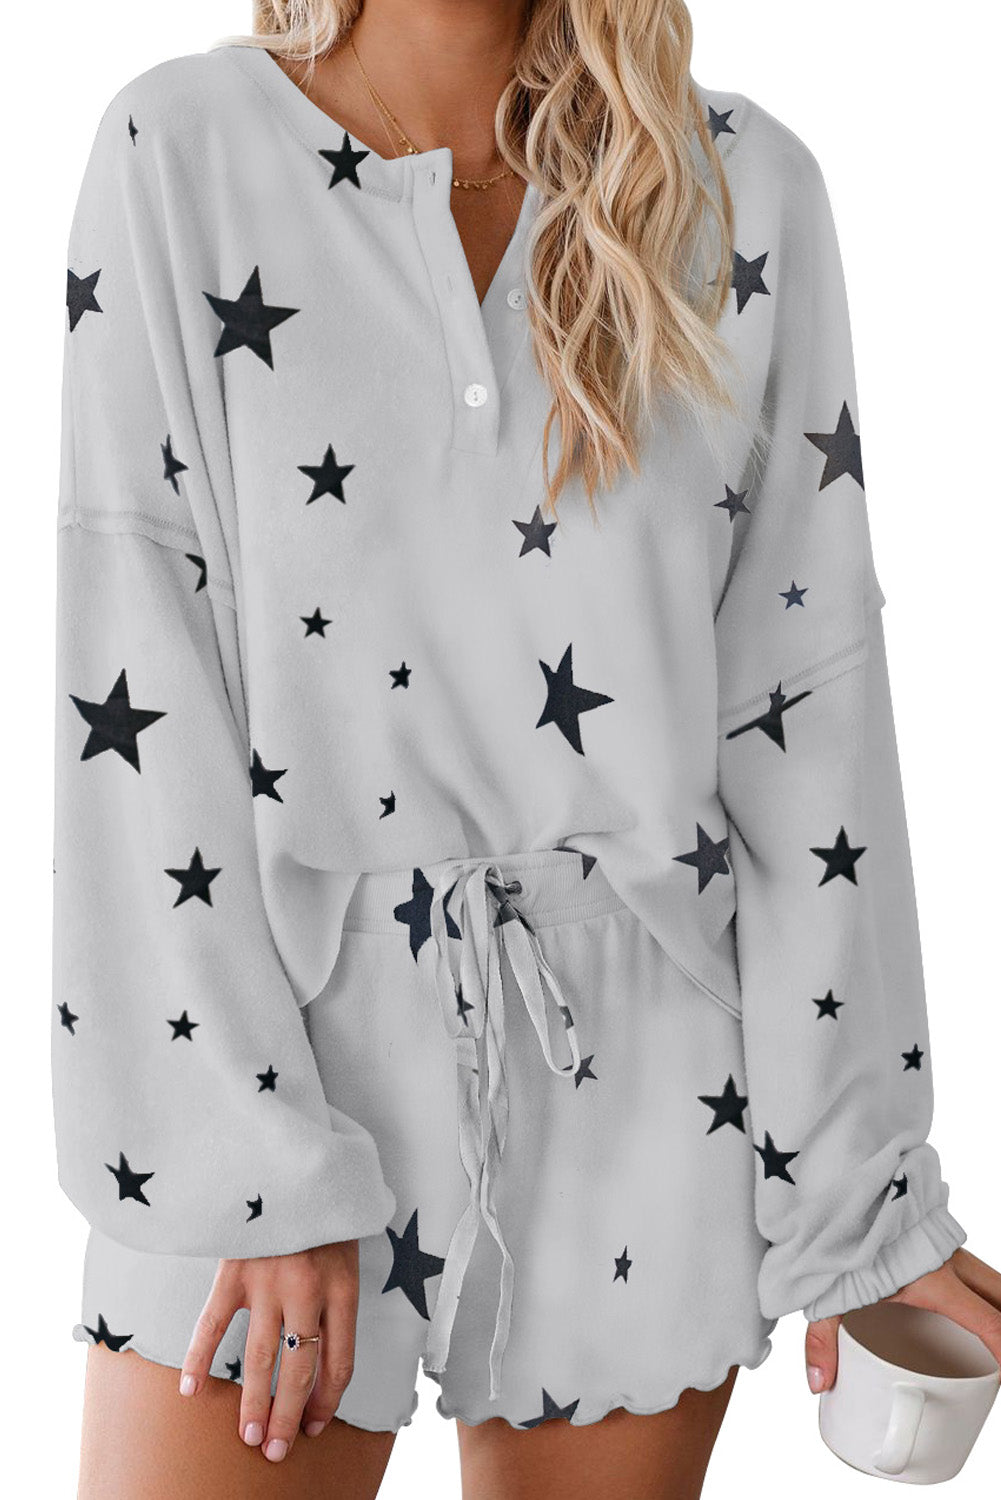 Set pigiama in maglia con stampa di stelle